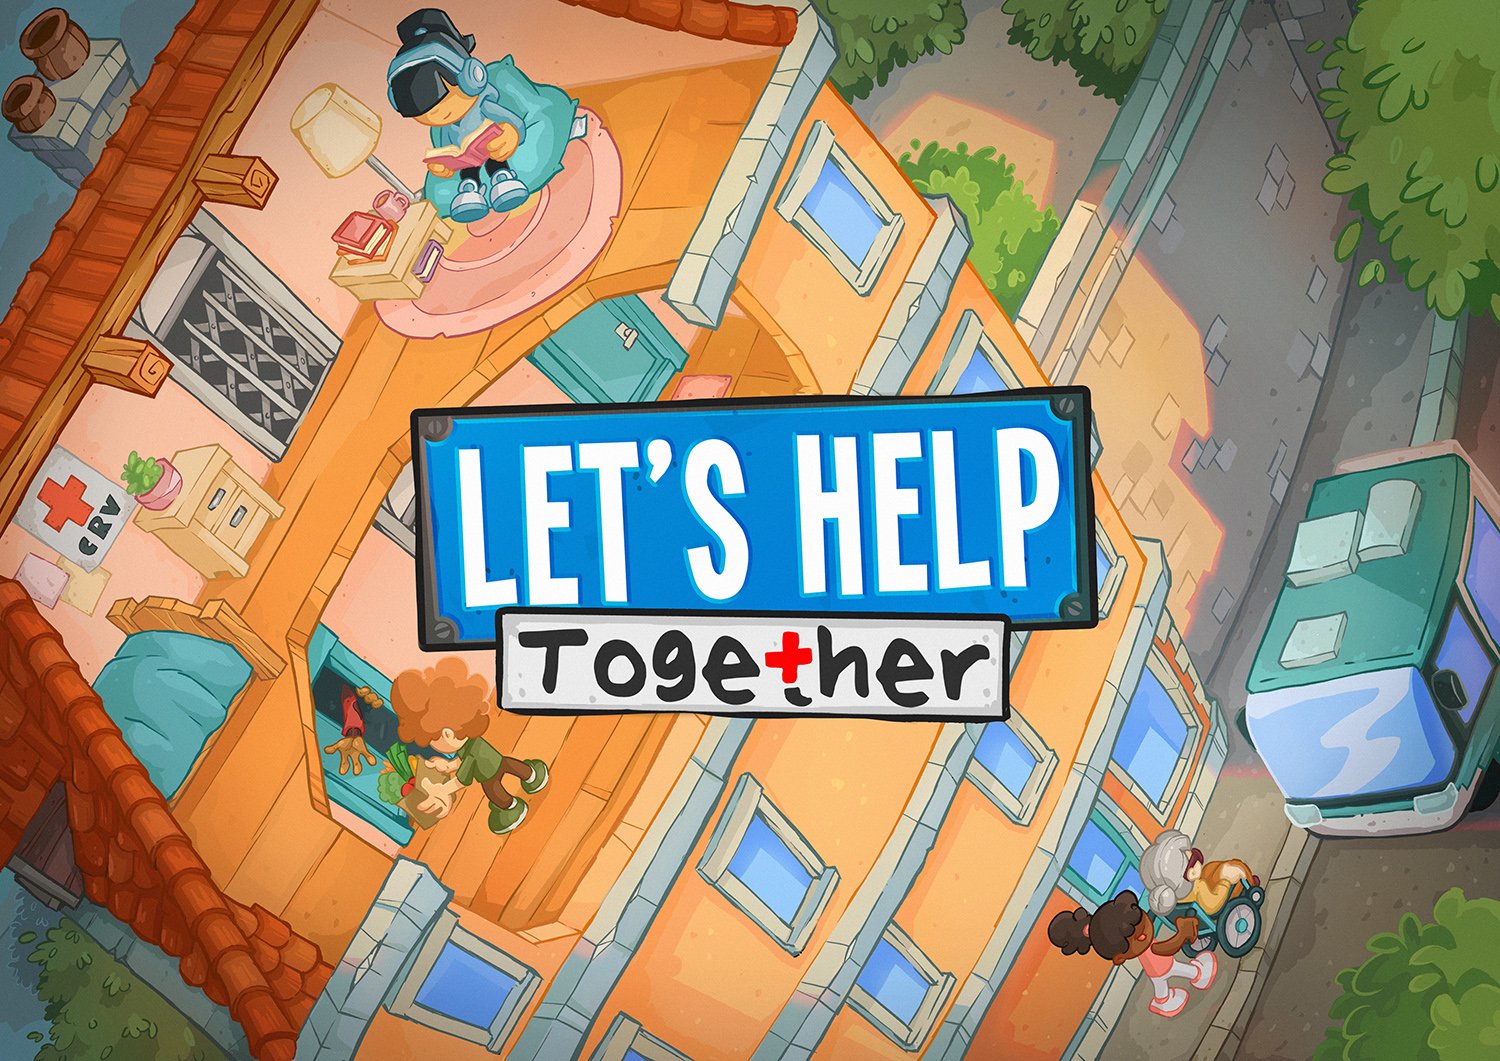 Let's help together